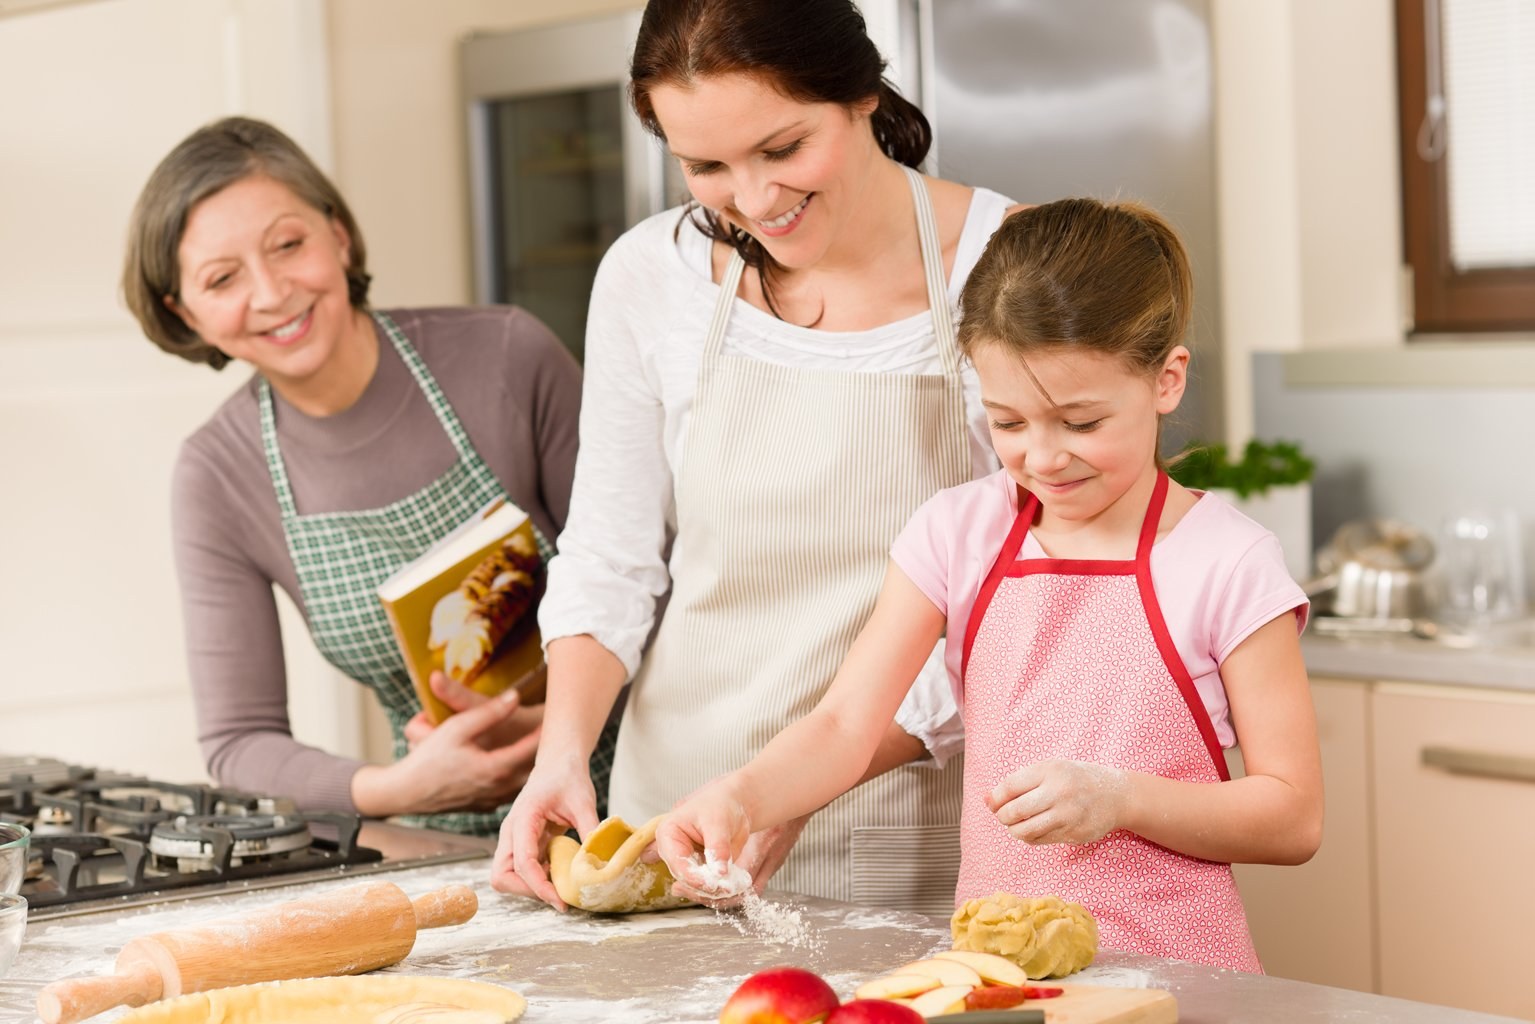 Пироги готовит мама. Кухня для детей. Семья на кухне. Готовка с детьми на кухне. Дети готовят с родителями.